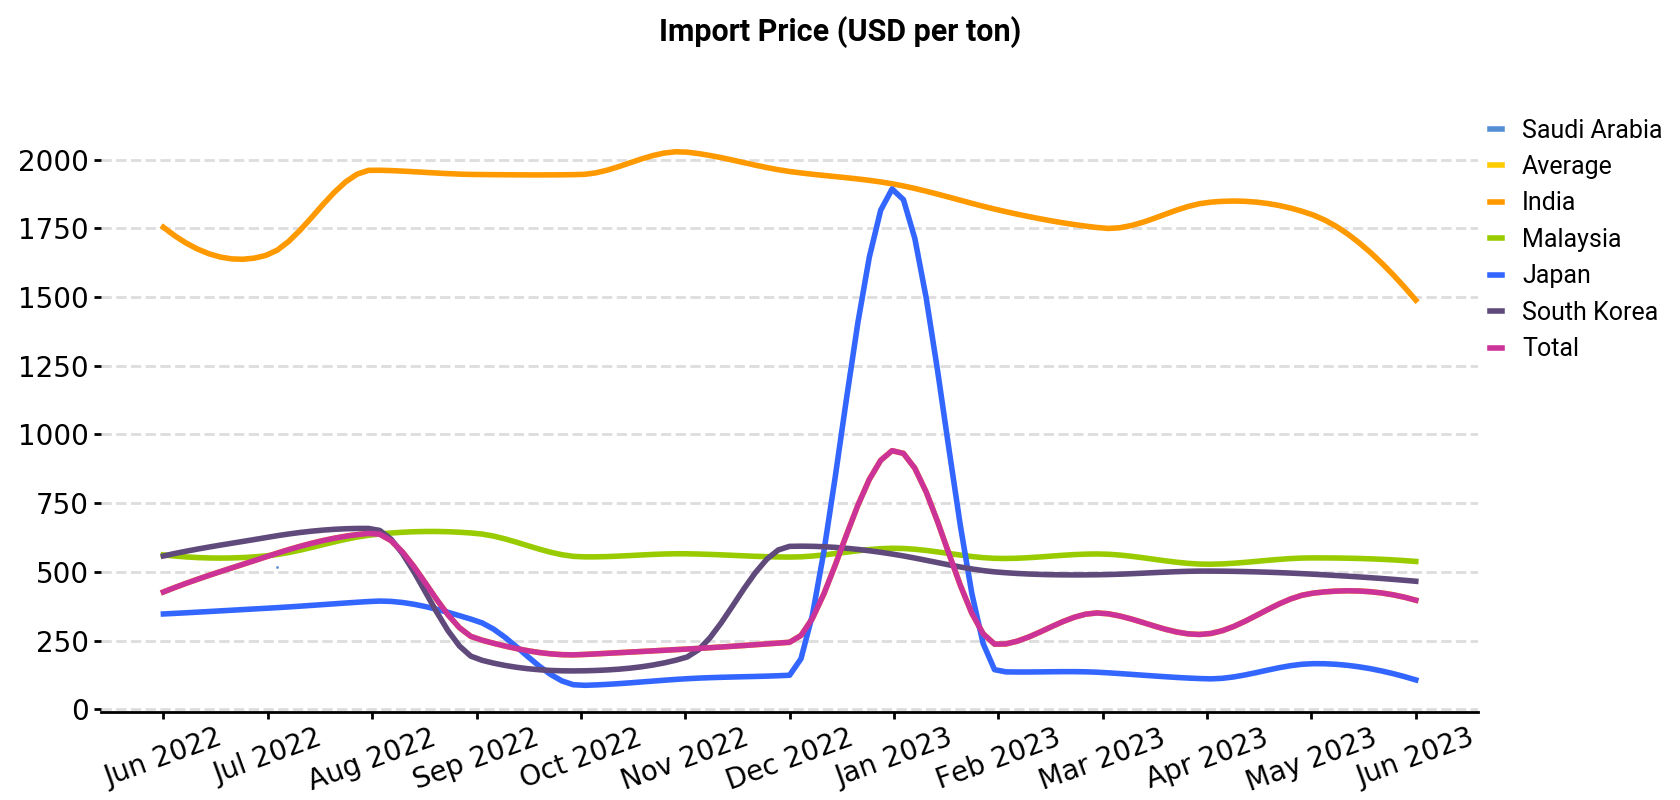 Import Price (USD per ton)